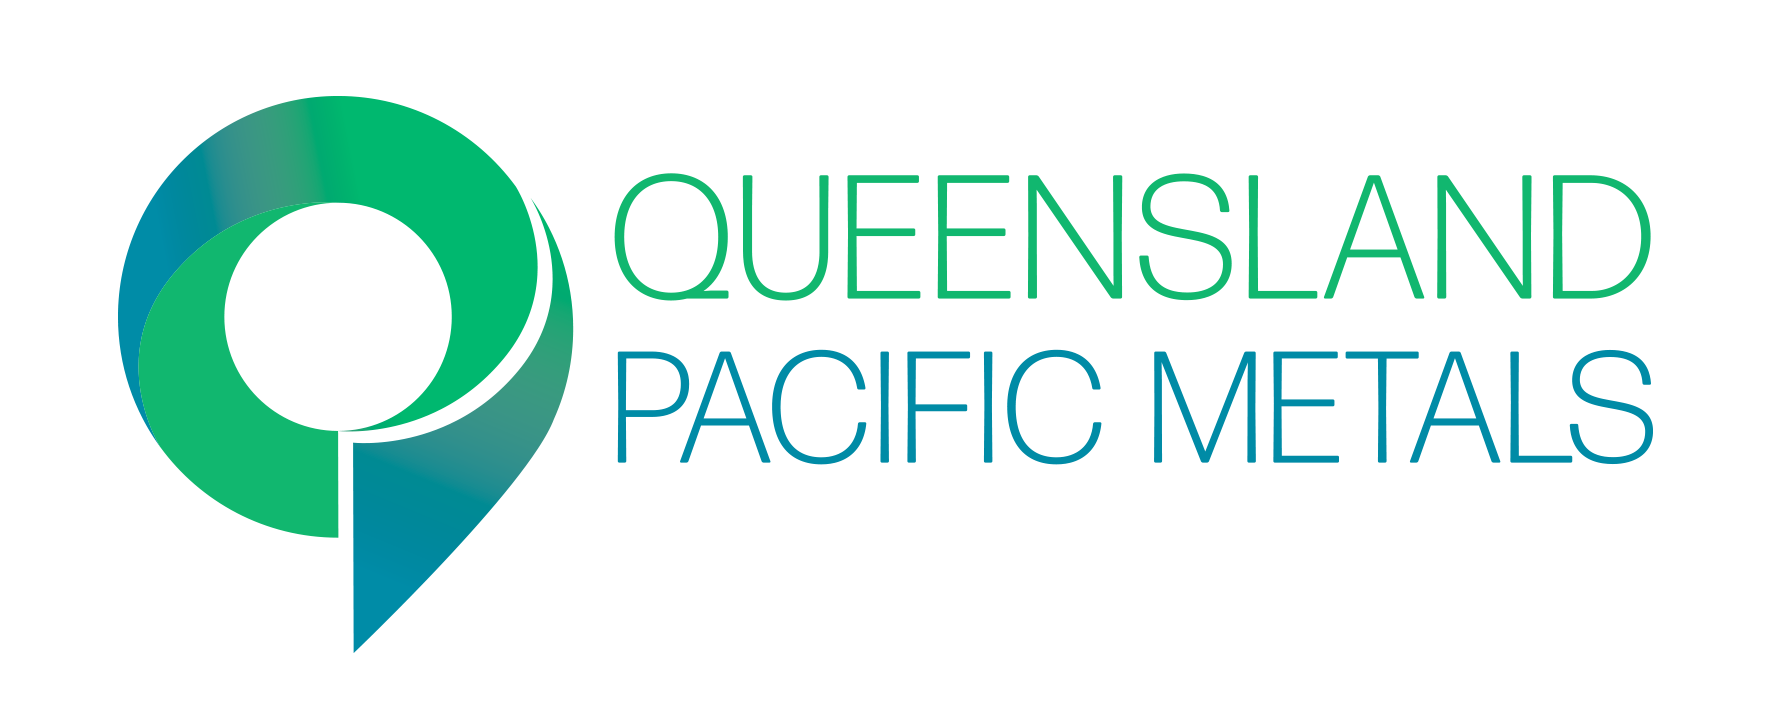 Queensland Pacific Metals